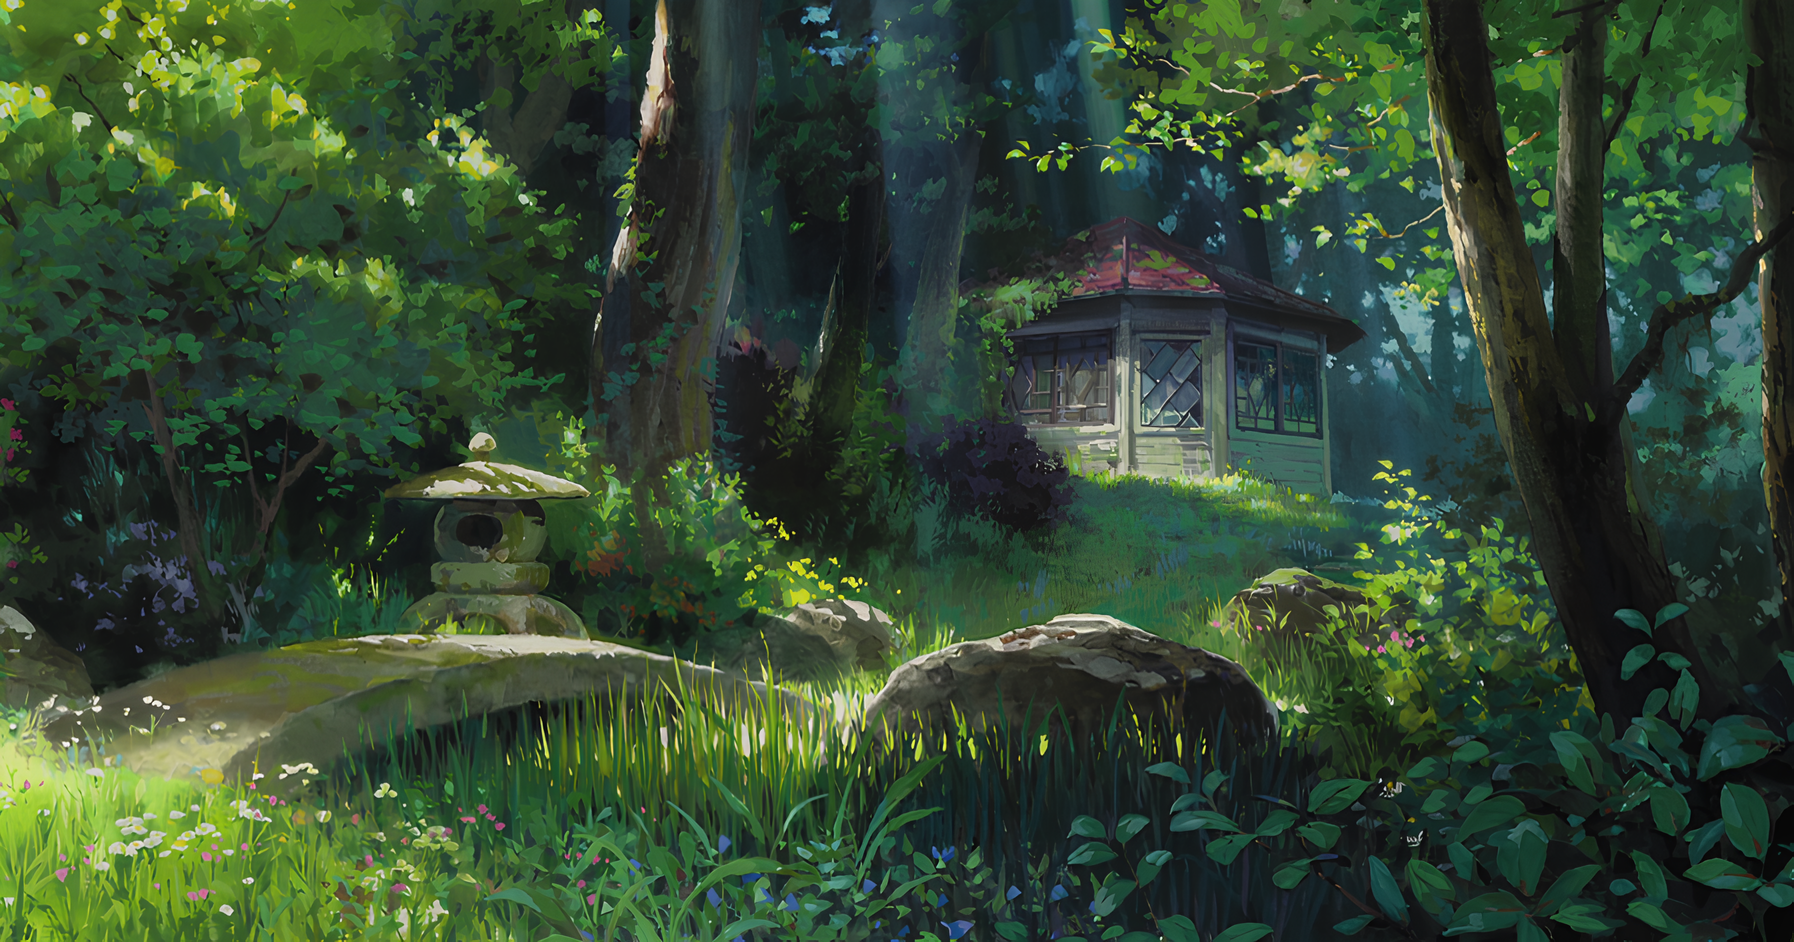 Latest Studio Ghibli Illustration